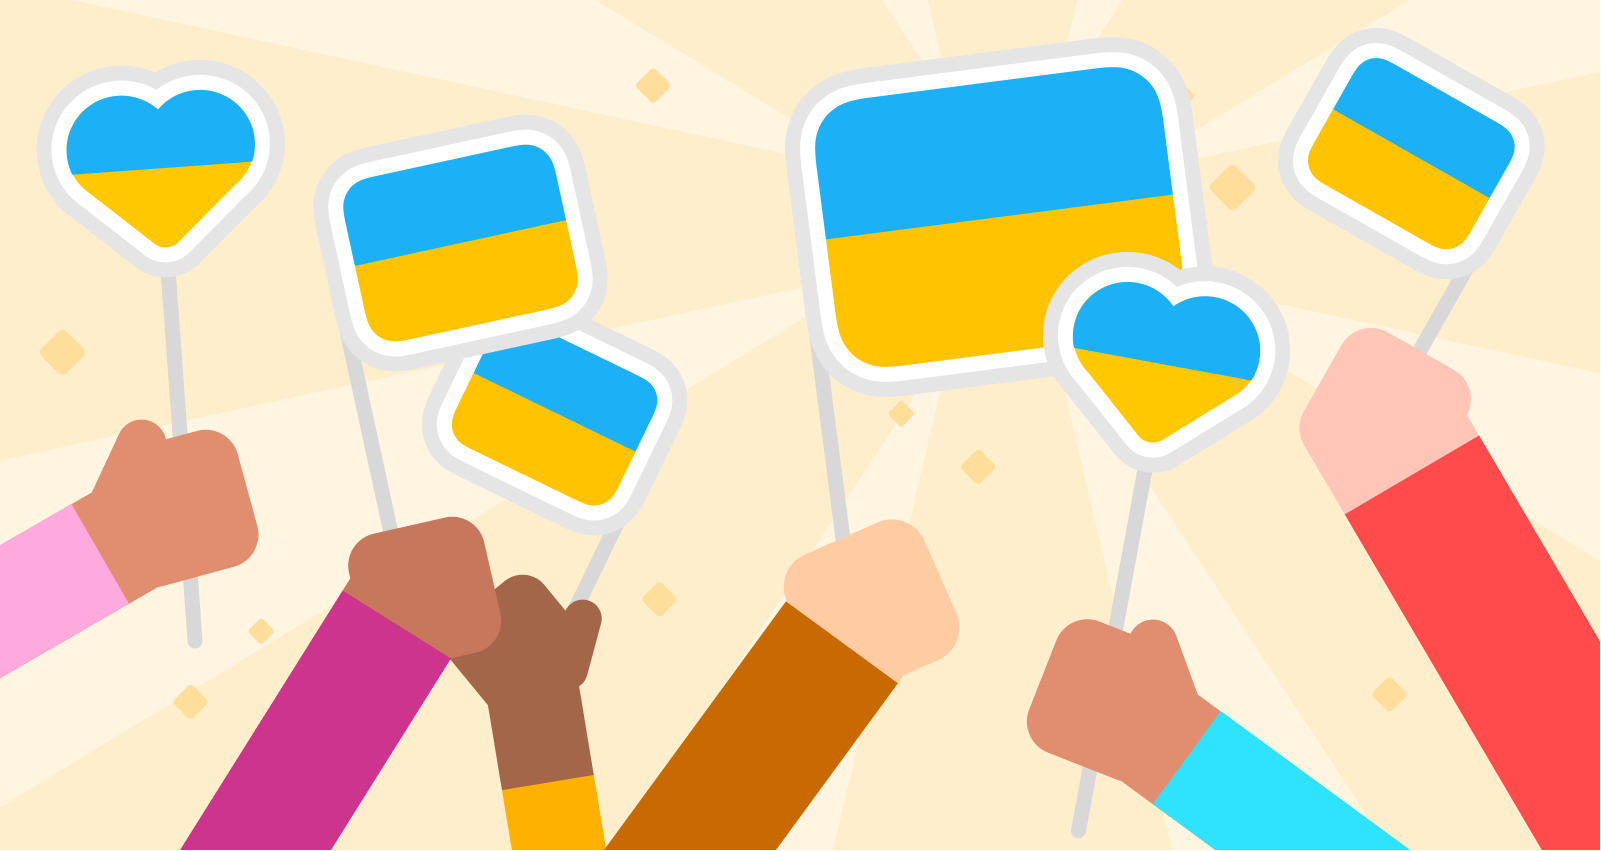 Abbildung von sechs Händen, die sechs ukrainische Flaggen halten. Manche Flaggen sind rechteckig und andere sind herzförmig. Die Hände sind in verschiedenen Hauttönen und ihre Ärmel haben unterschiedliche Farben. Im Hintergrund der Fahnen sind schwach leuchtende Sonnenstrahlen angedeutet.